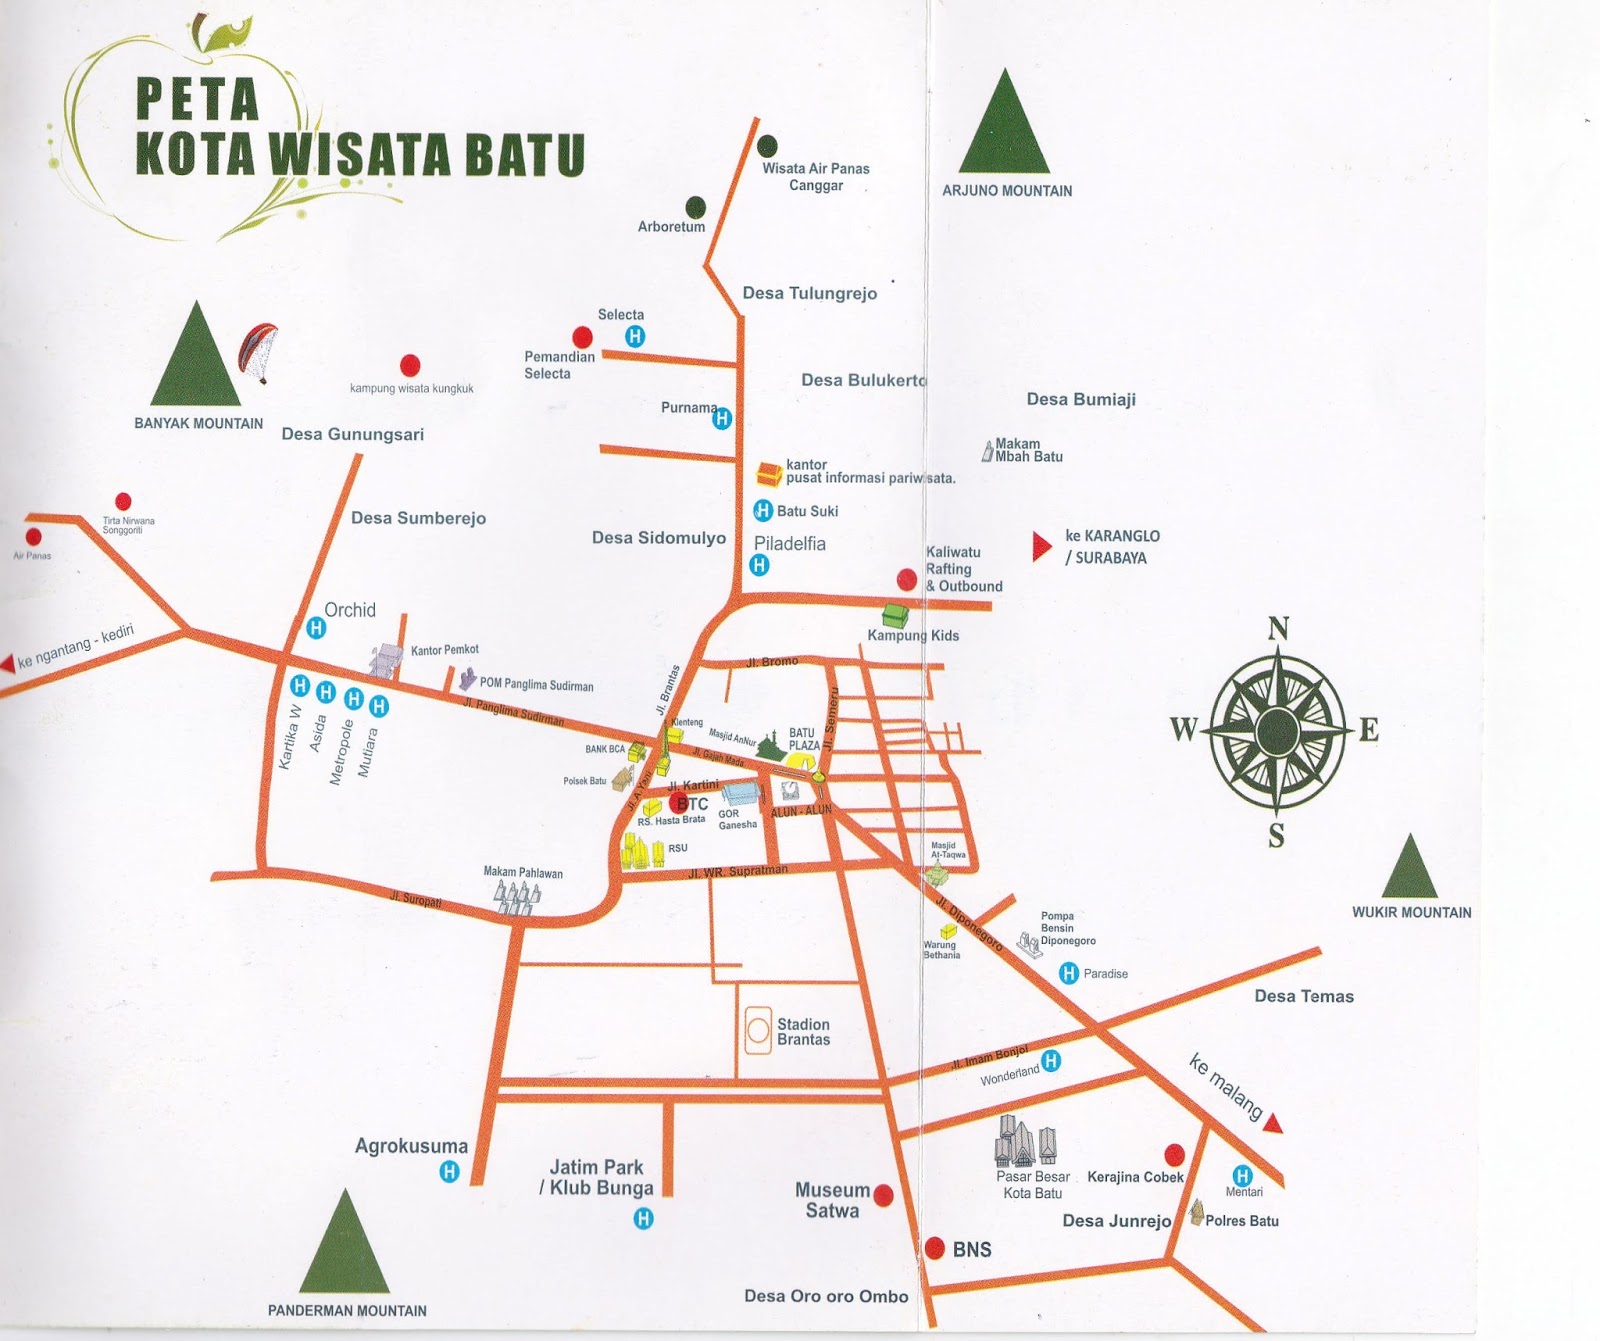 > Peta Lengkap Indonesia Peta Wisata Batu Malang